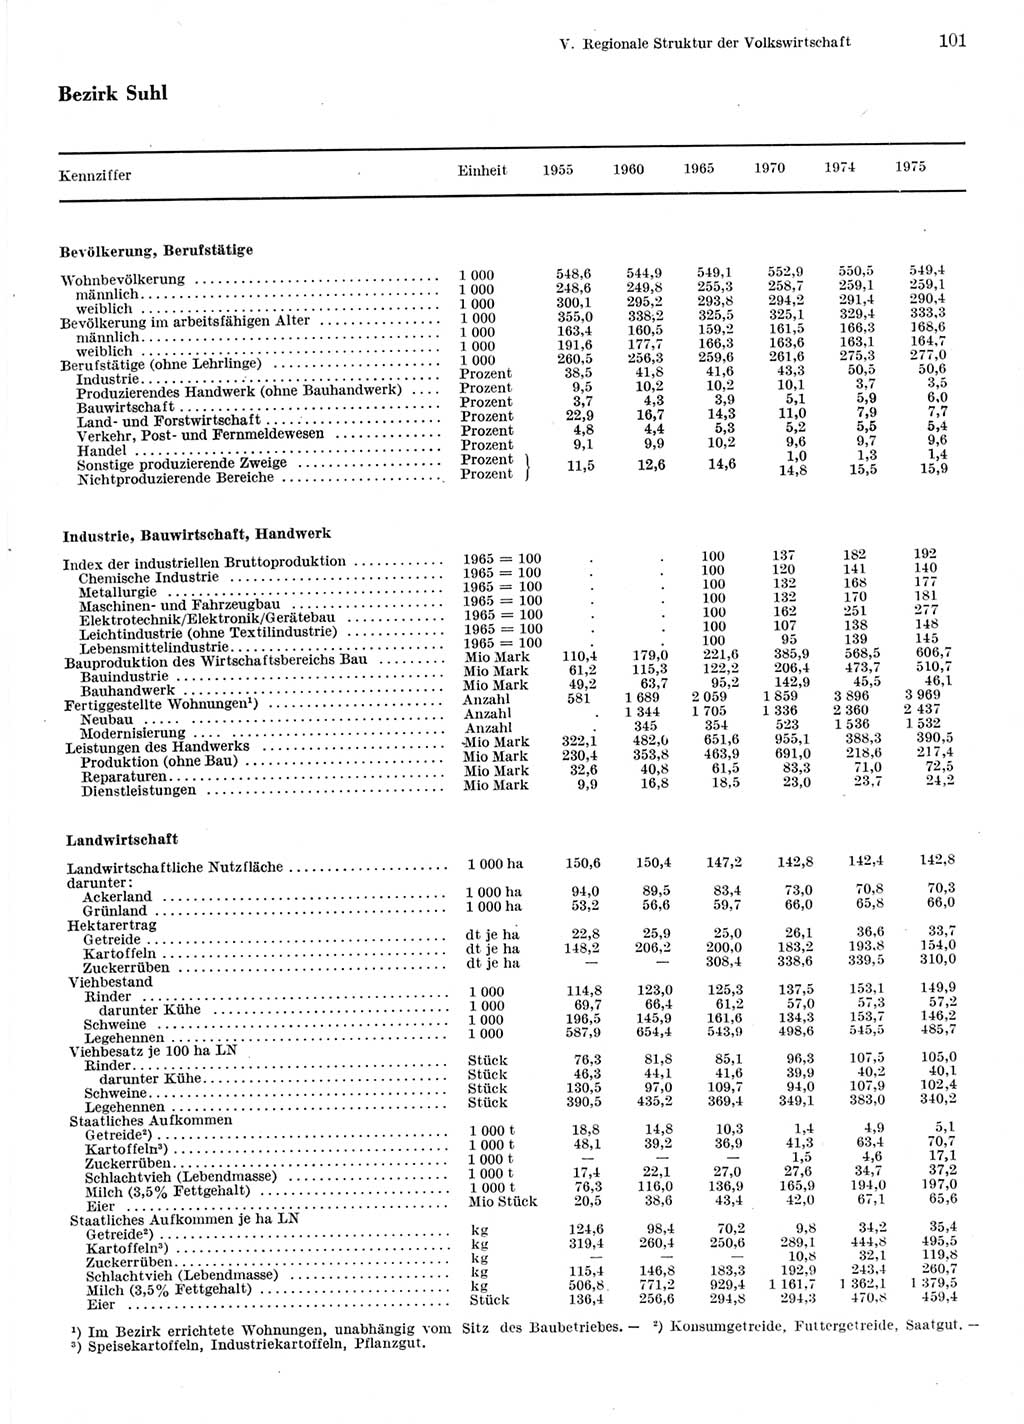 Statistisches Jahrbuch der Deutschen Demokratischen Republik (DDR) 1976, Seite 101 (Stat. Jb. DDR 1976, S. 101)